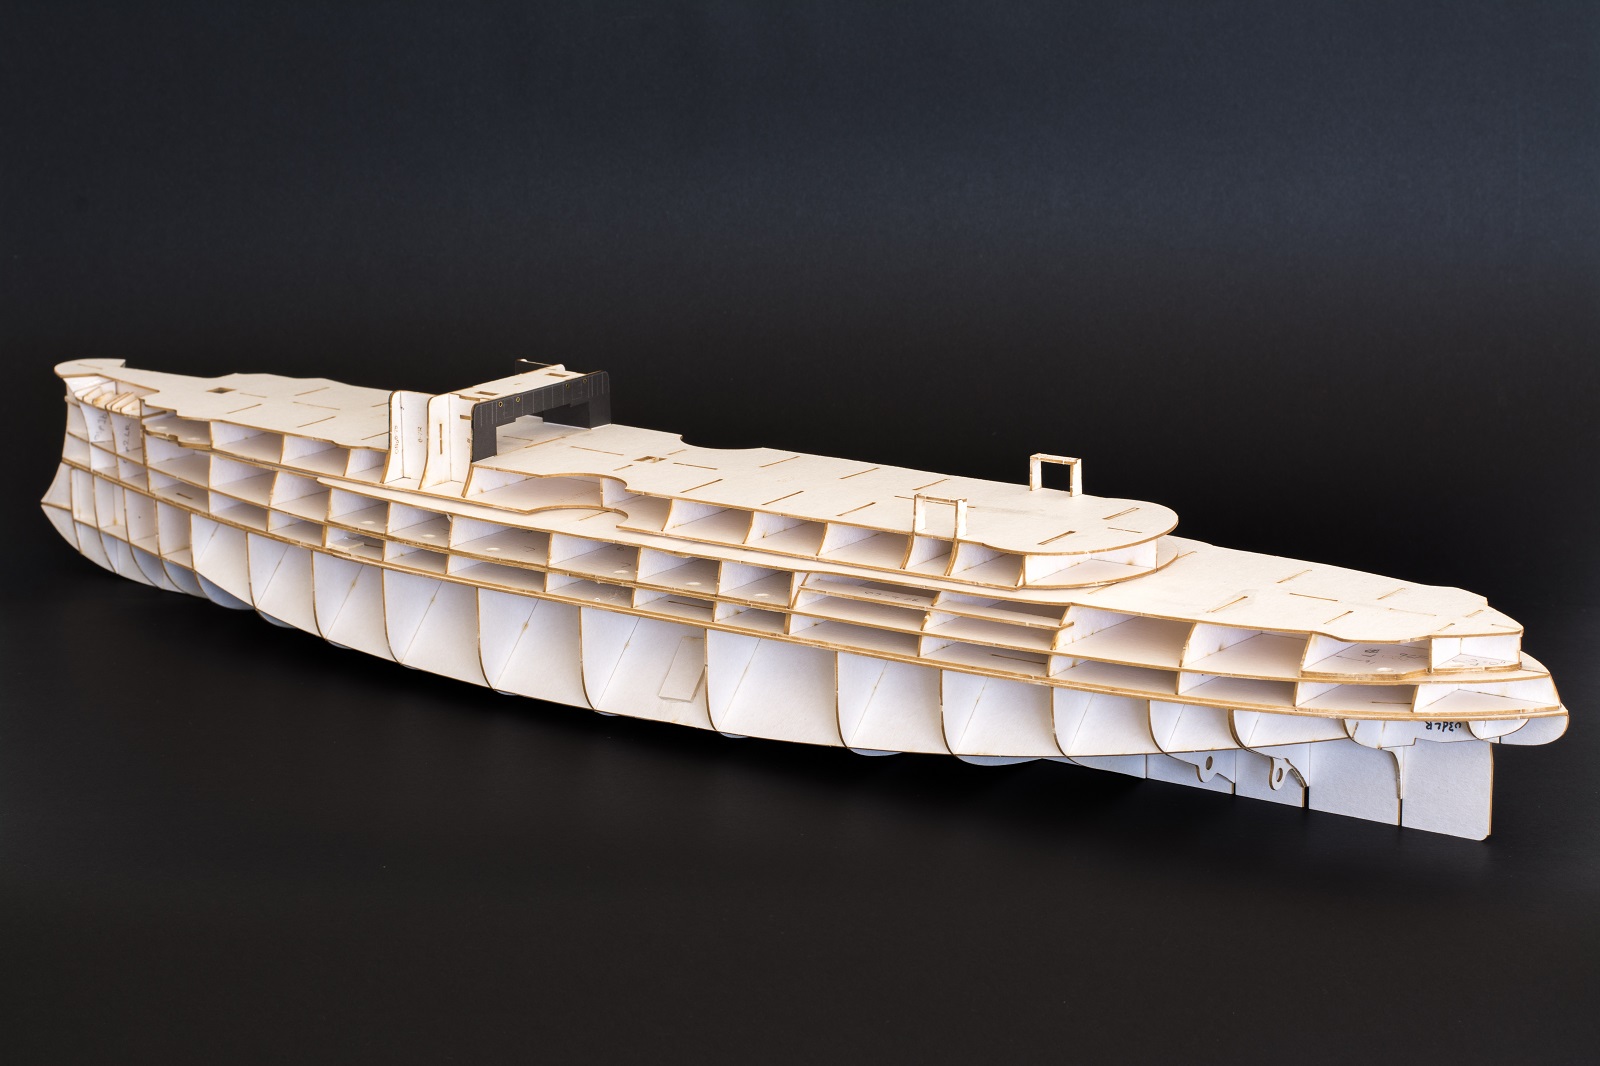 Сборка корабля из пластика. Модели кораблей из бумаги. Модель корабля из фанеры. Модель корабля из бумаги своими руками. Лайнер модель из бумаги.